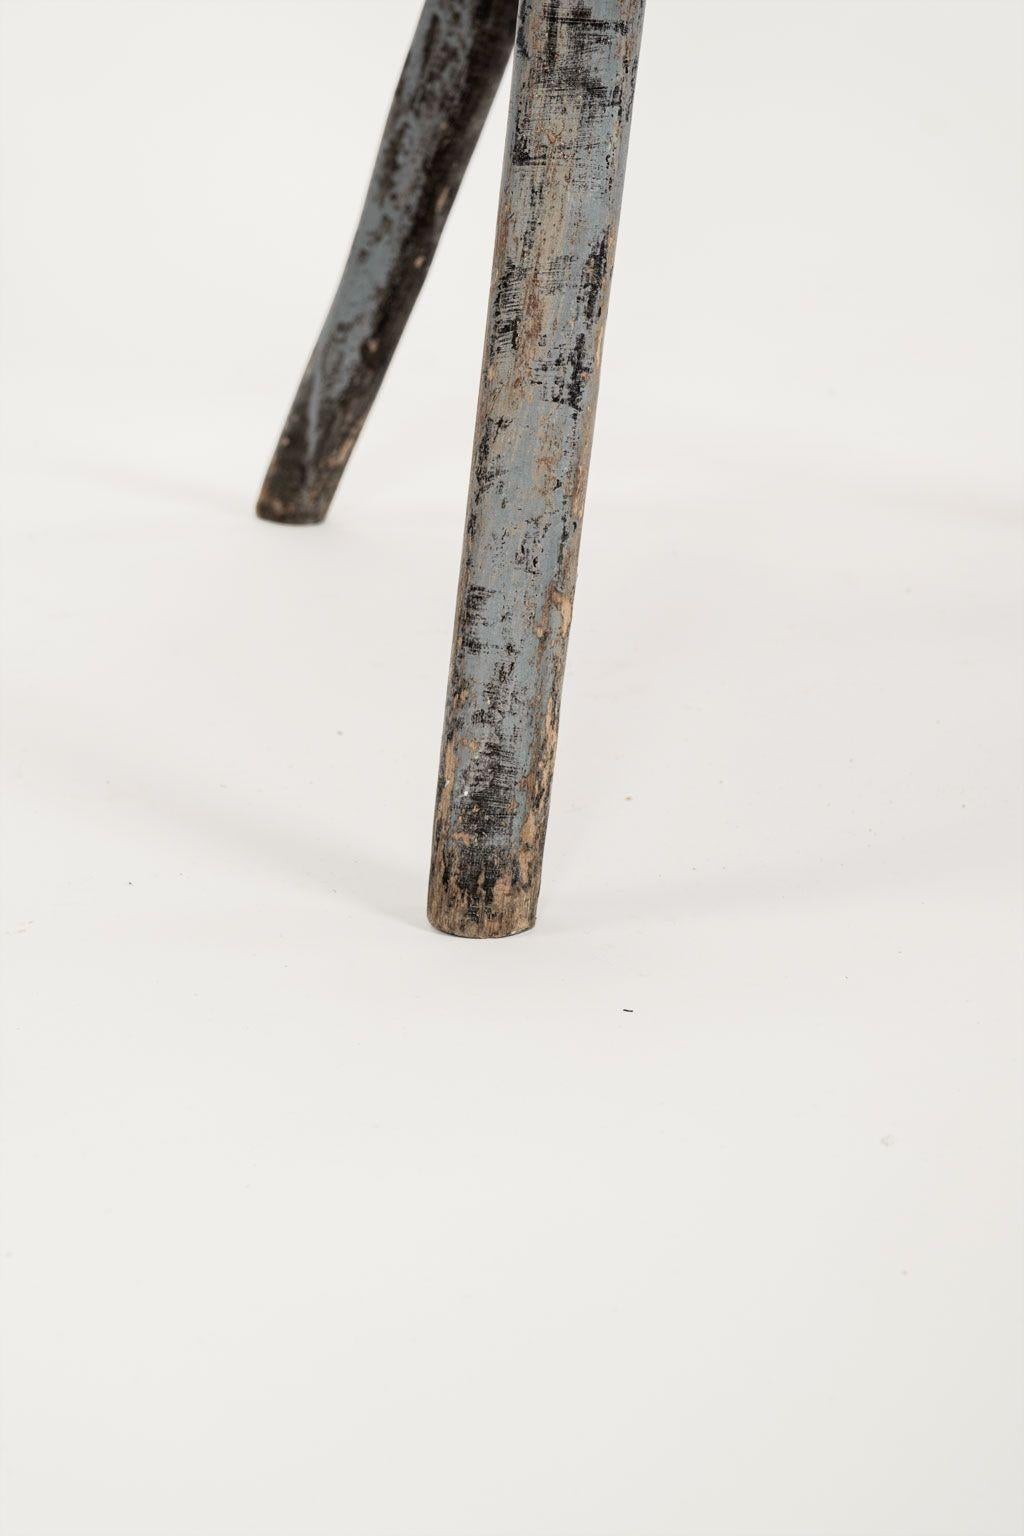 Primitiver, blaugrau lackierter schwedischer Stuhl mit runder Rückenlehne, ca. 1770-1789. Reste der ursprünglichen oder frühen blau-grauen, grünen und lachsrosa bemalten Dekoration. Schwerer, dicker Sitz aus einem Brett. Sehr robust und stabil trotz